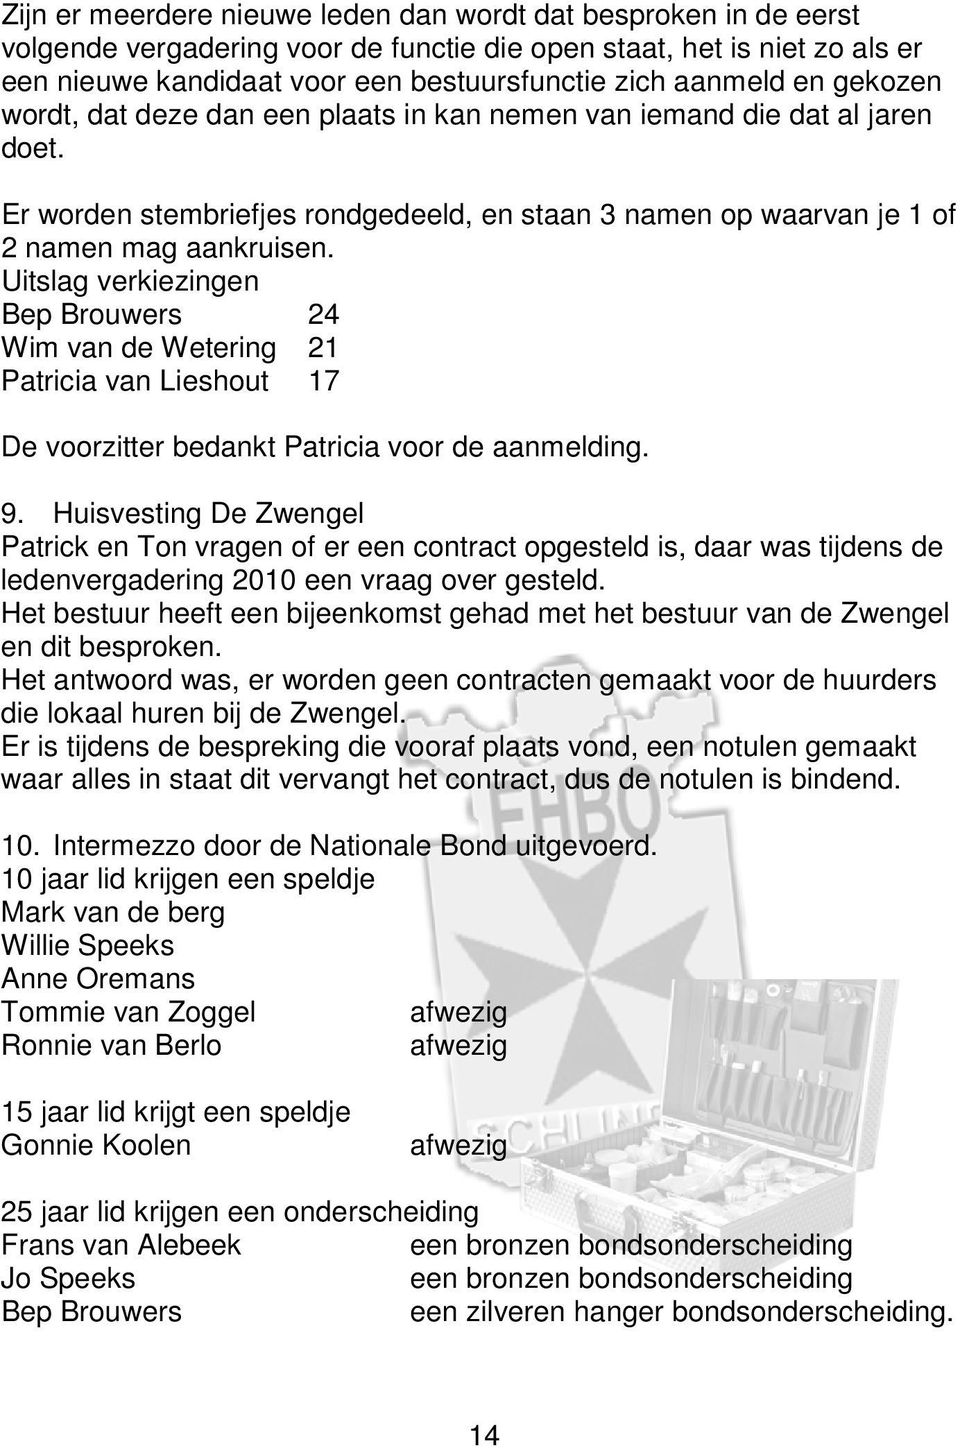 Uitslag verkiezingen Bep Brouwers 24 Wim van de Wetering 21 Patricia van Lieshout 17 De voorzitter bedankt Patricia voor de aanmelding. 9.